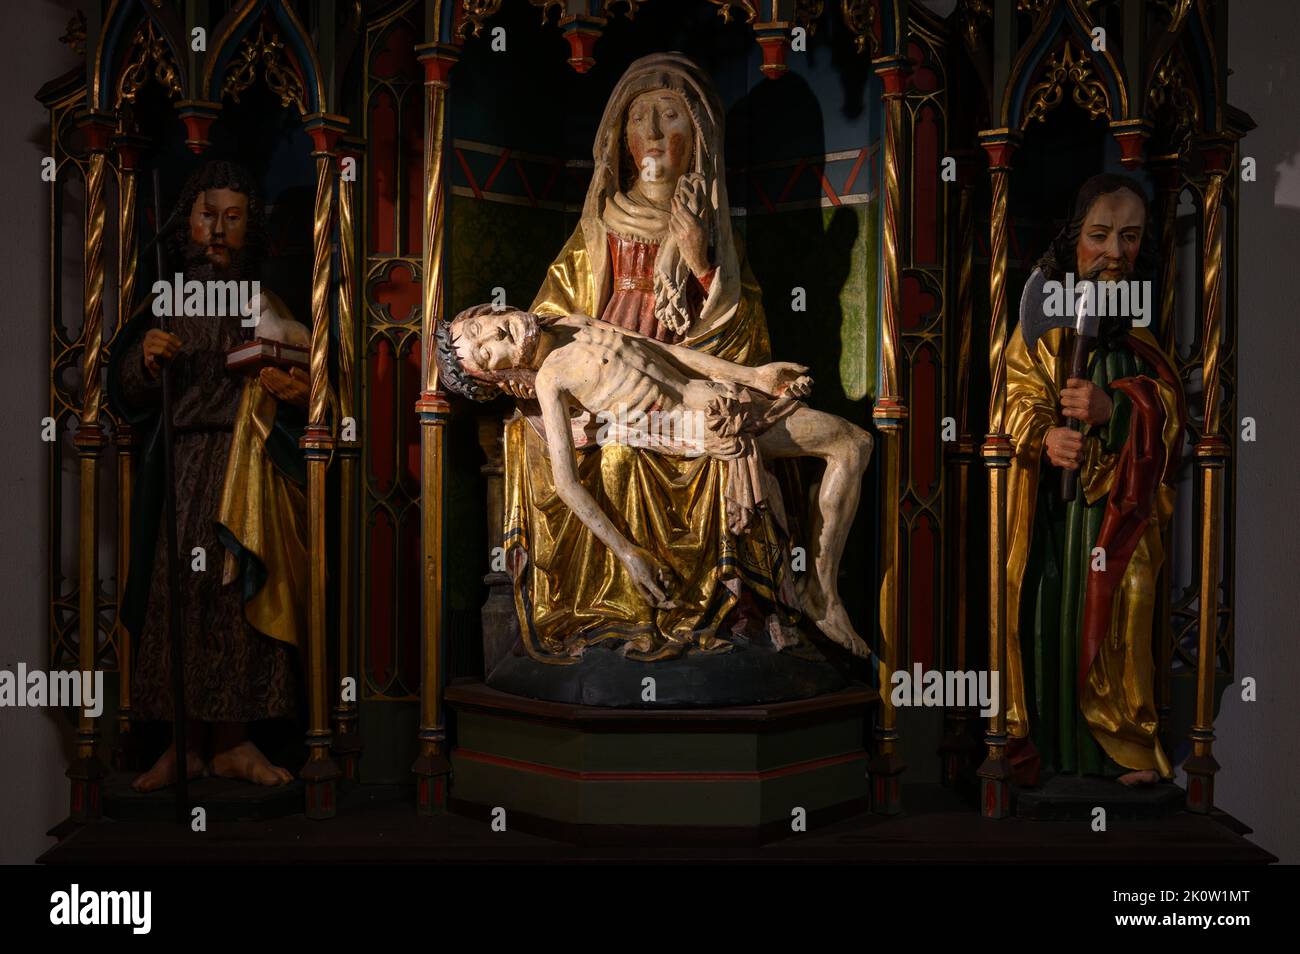 Die Pietà – die Jungfrau Maria, die den Leichnam Jesu umrabelt. Die Benediktinerabtei St. Maurice und St. Maurus von Clervaux. Clervaux, Luxemburg. Stockfoto